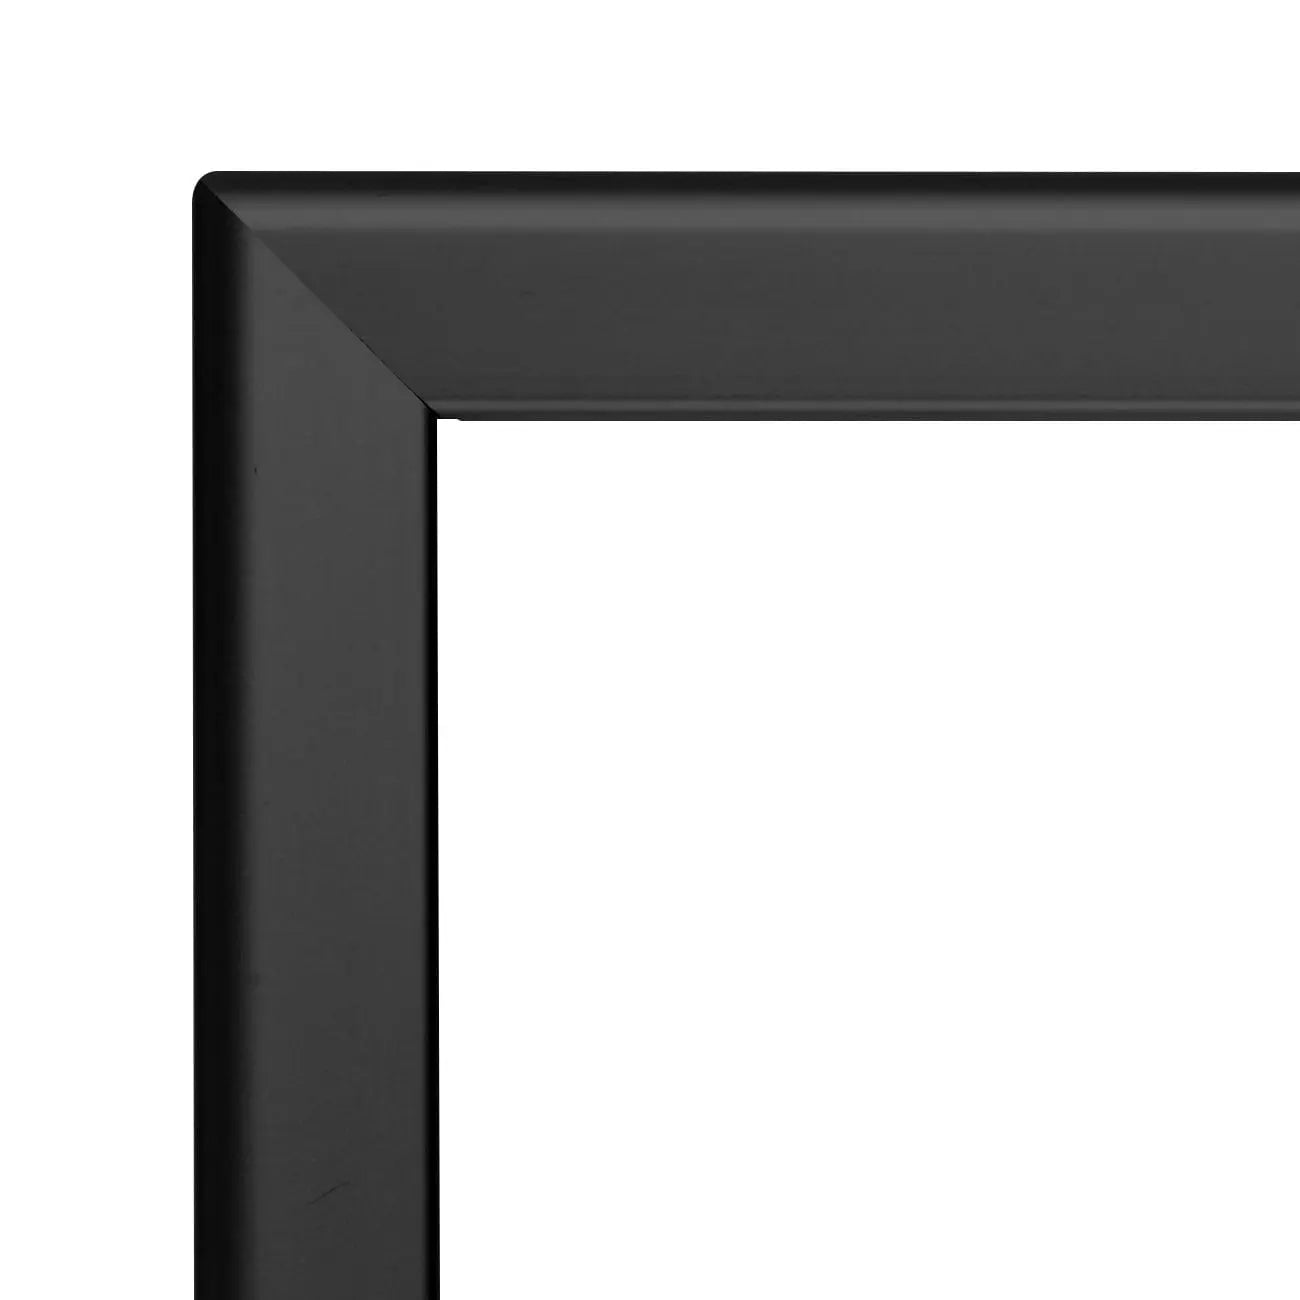 30x40 Black Snap Frame - 1.25" Profile - Snap Frames Direct